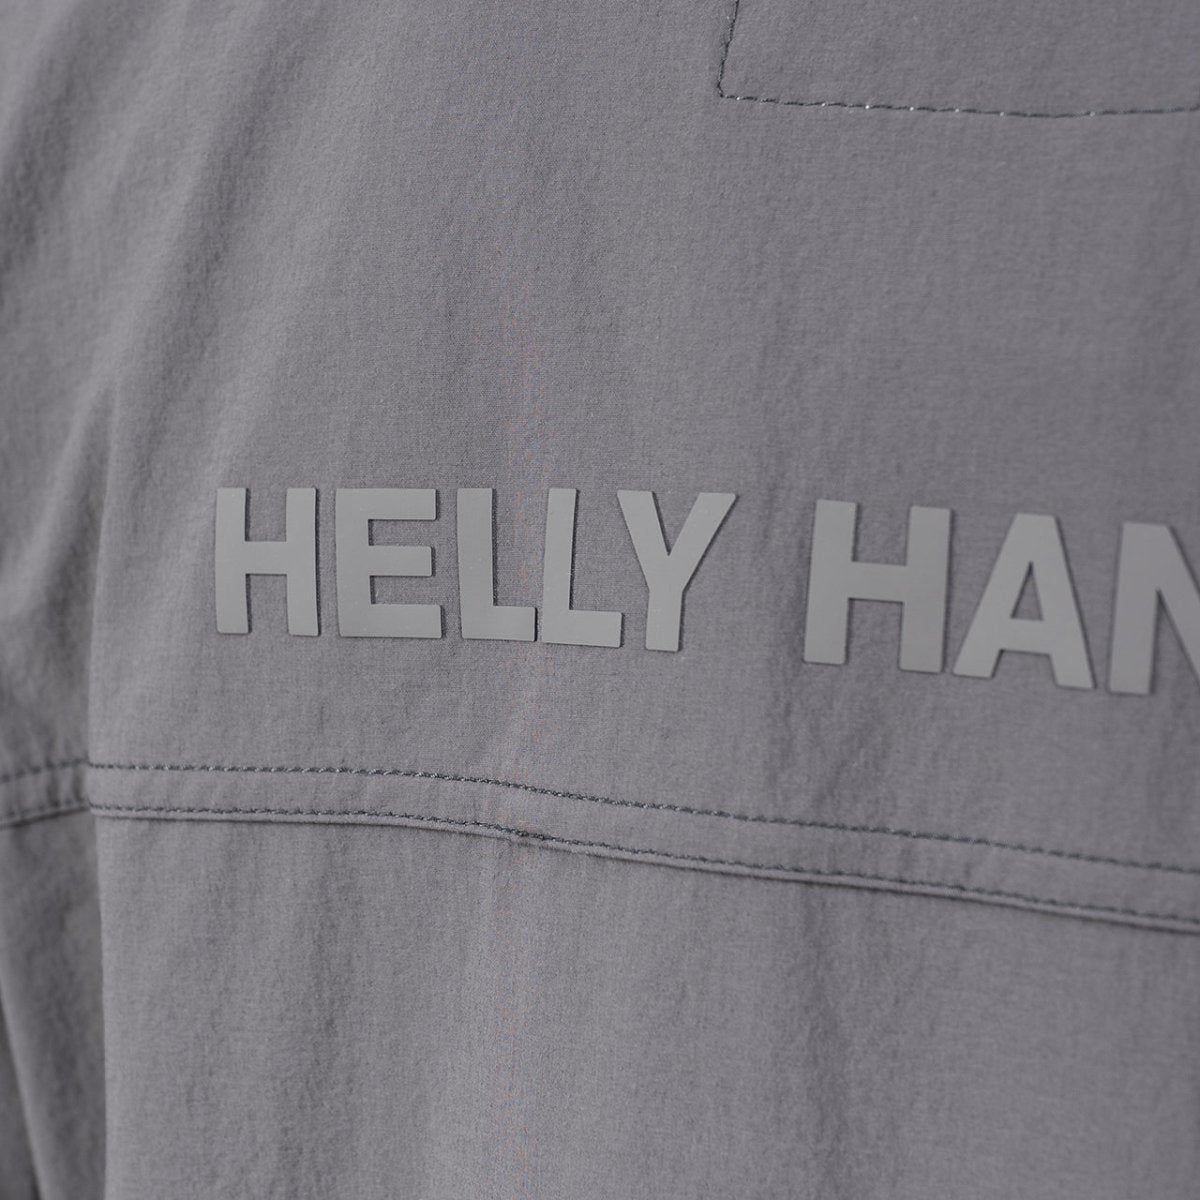 Helly Hansen Arc S21 Saline Jacket (Anthrazit)  - Allike Store